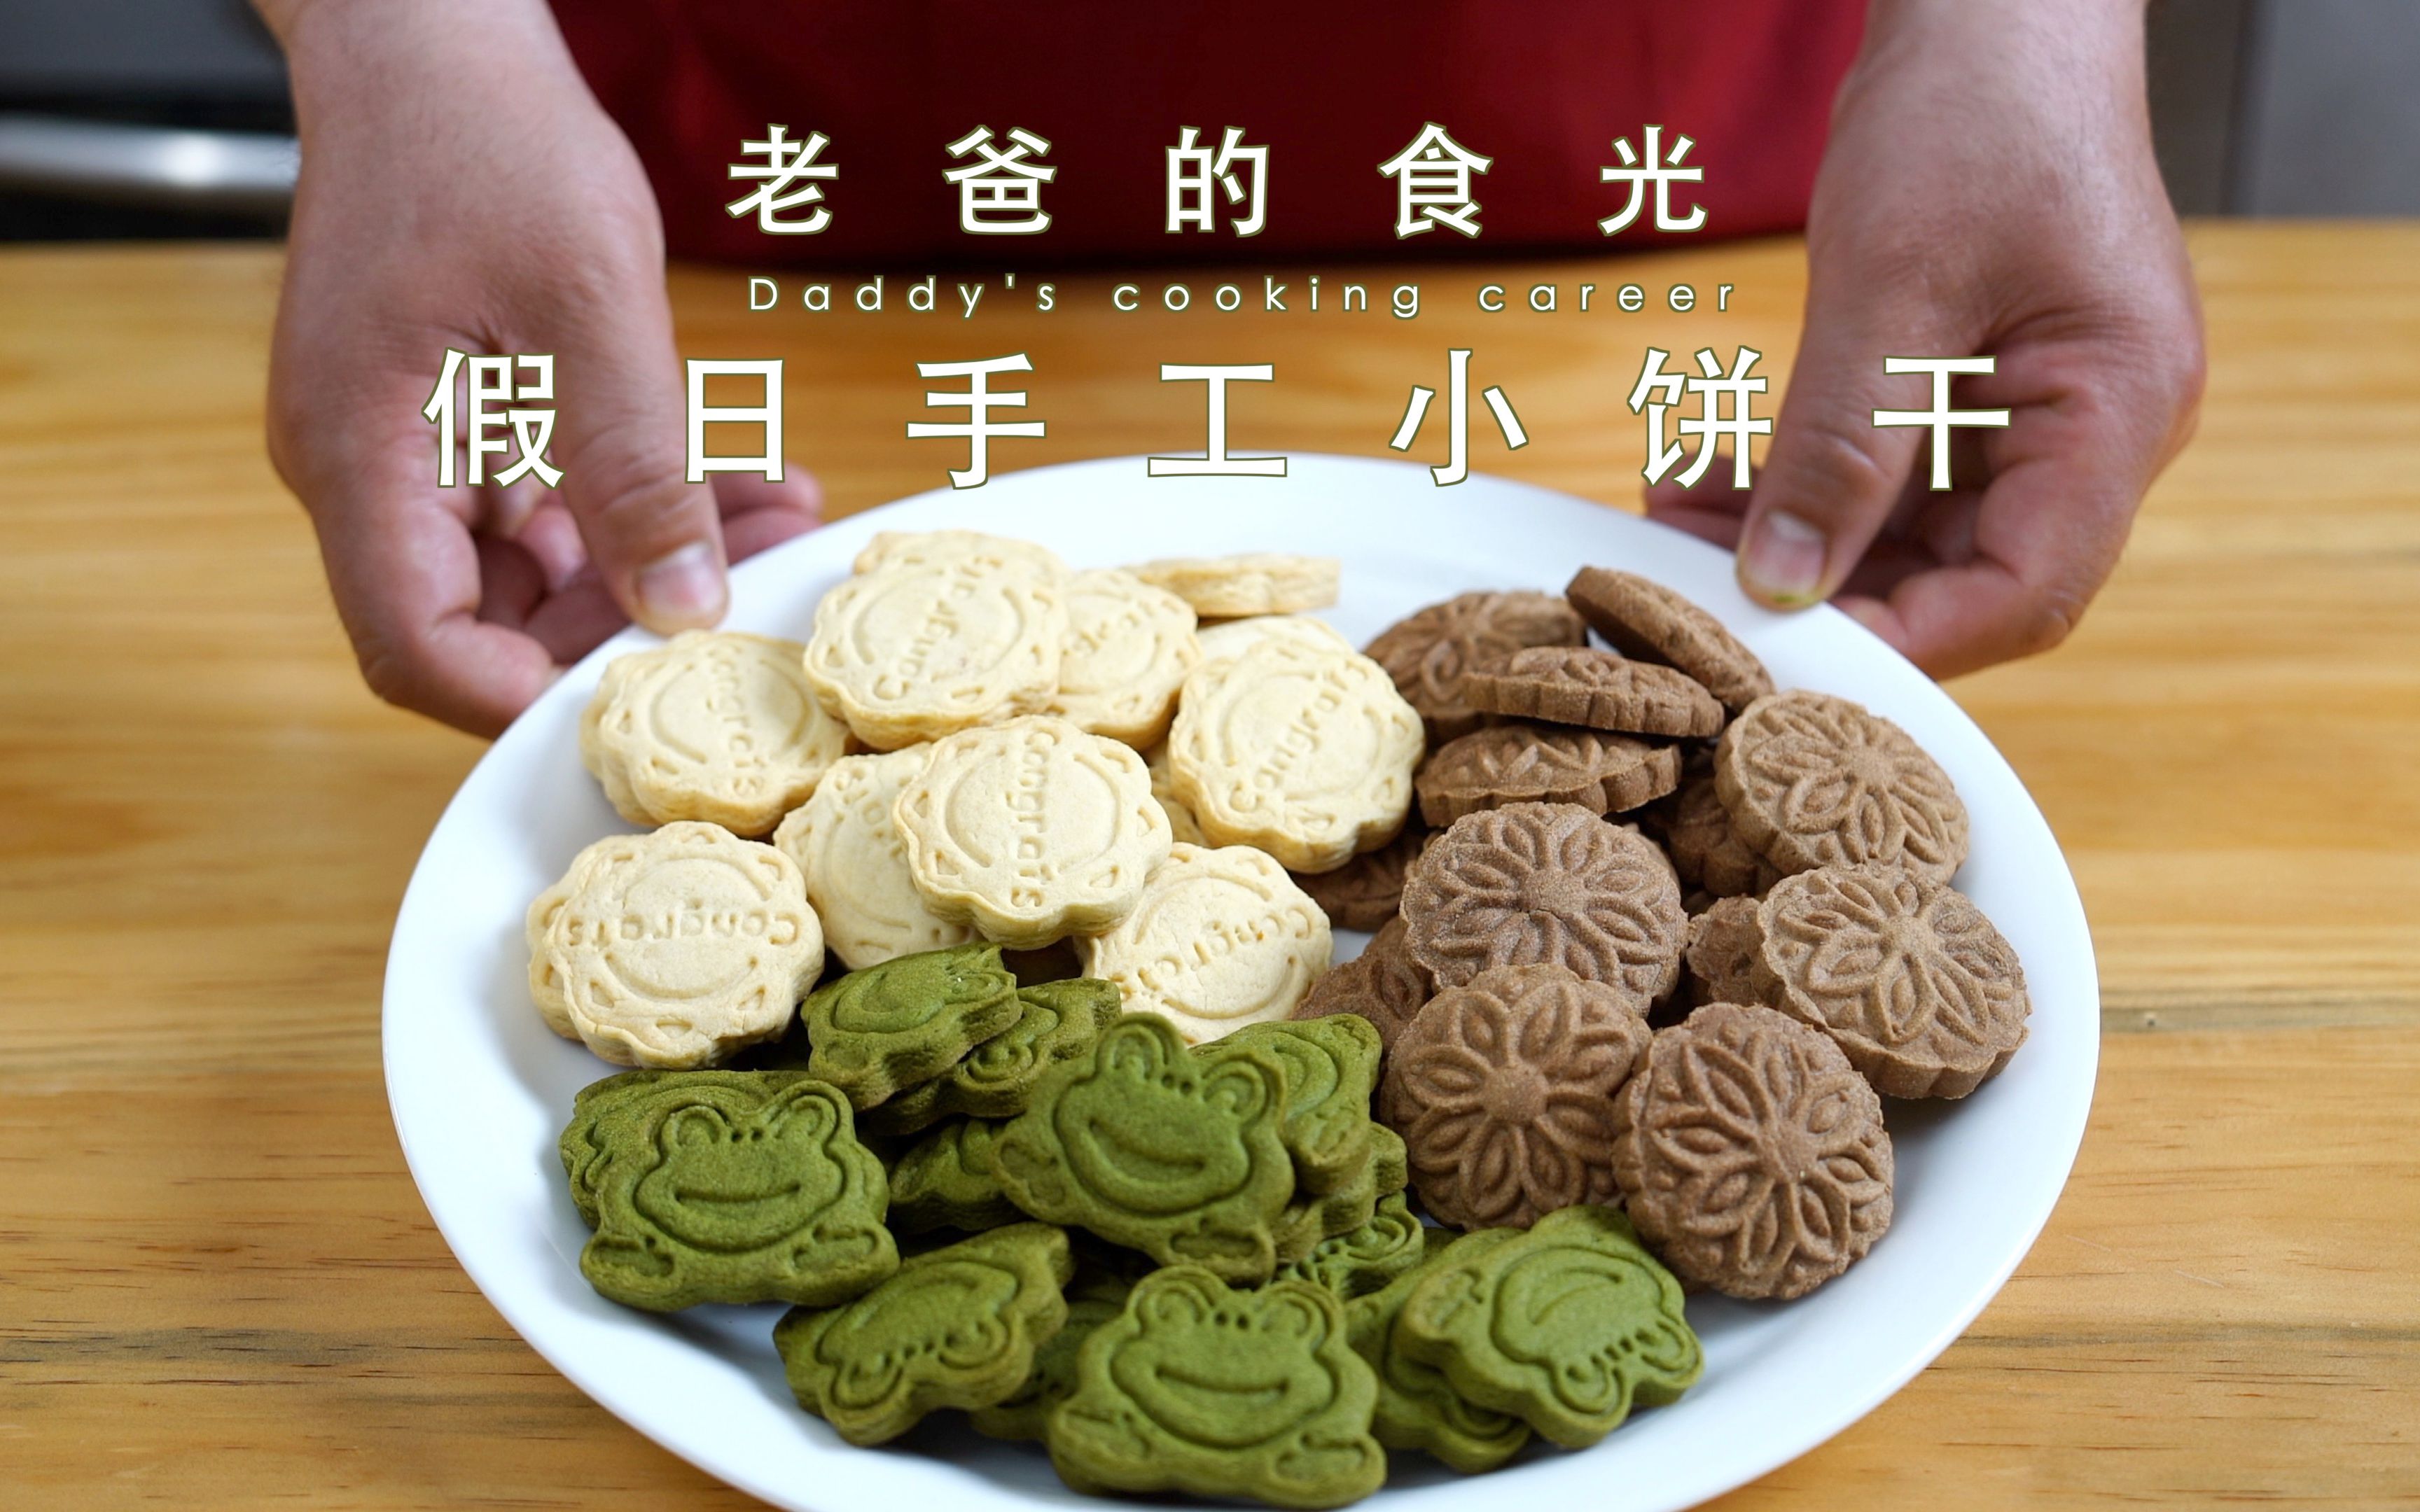 深圳社区家园网 宝岭社区 2018.1.20 亲子手工饼干制作